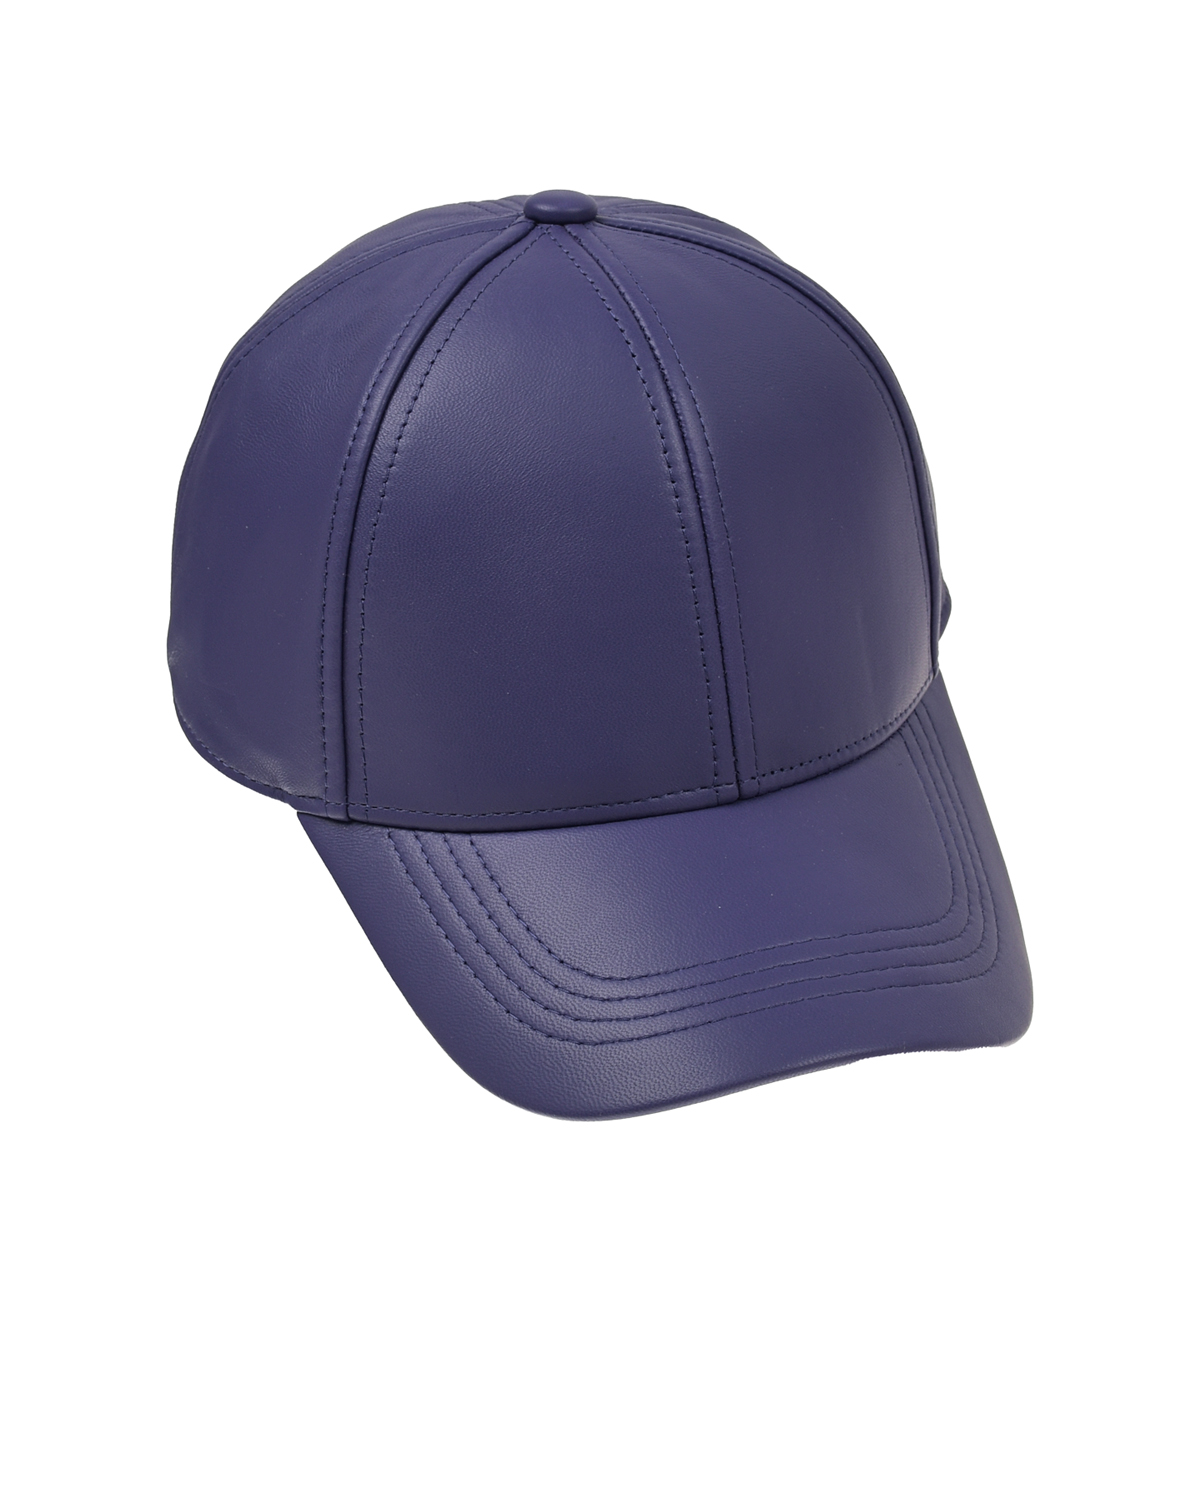 Фиолетовая кепка из натуральной кожи Yves Salomon, размер unica, цвет фиолетовый - фото 1